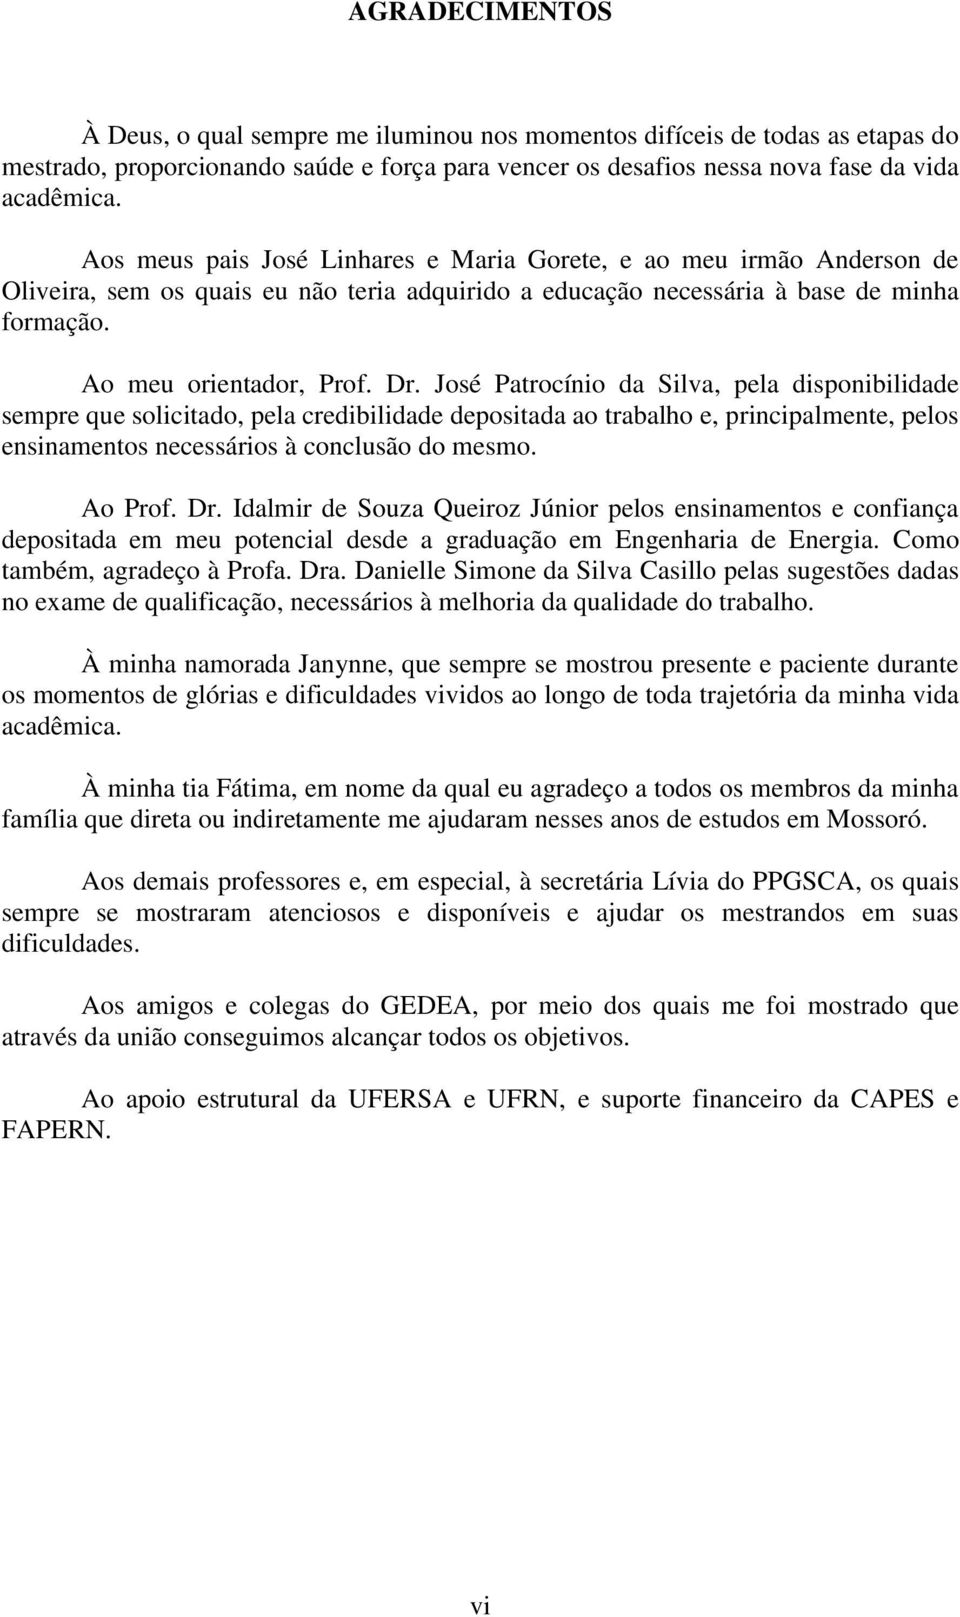 José Patrocínio da Silva, pela disponibilidade sempre que solicitado, pela credibilidade depositada ao trabalho e, principalmente, pelos ensinamentos necessários à conclusão do mesmo. Ao Prof. Dr.